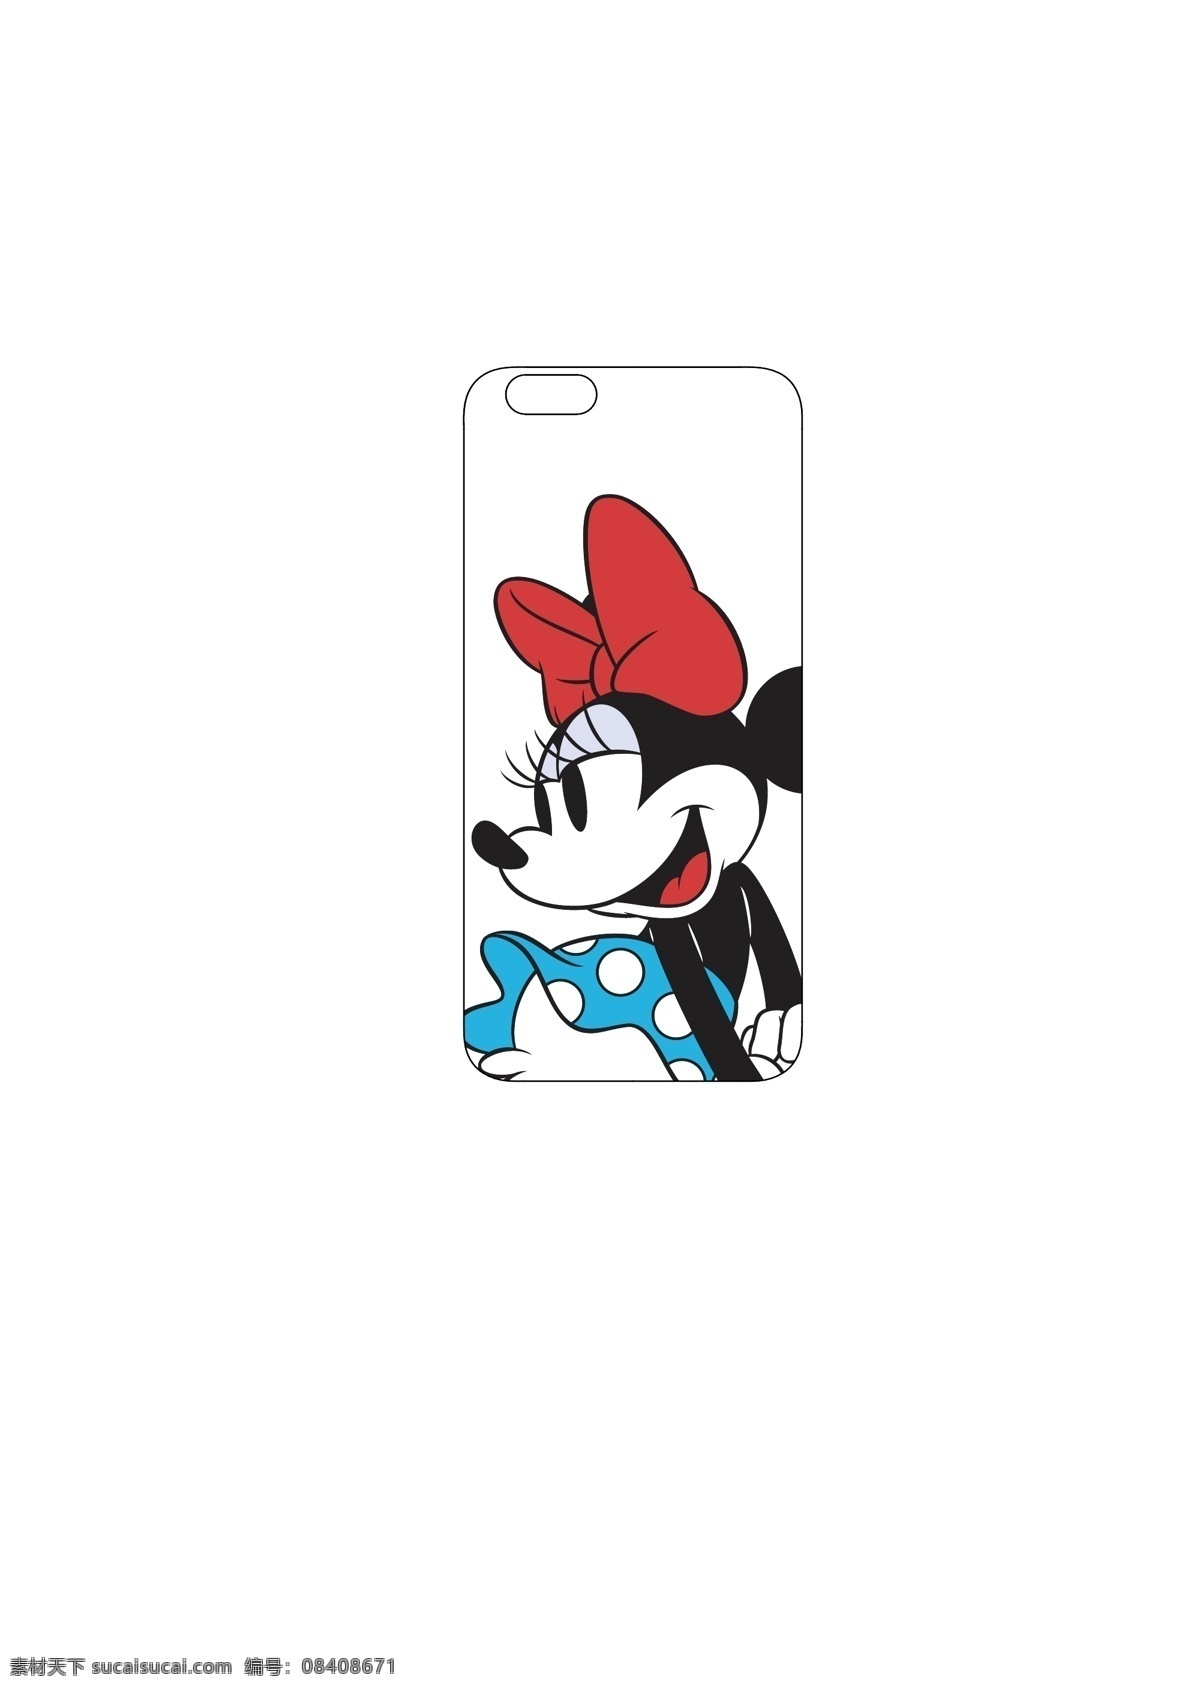 迪士尼 可爱迪士尼 手机壳 disney 米奇老鼠 手机壳素材 底纹边框 背景底纹